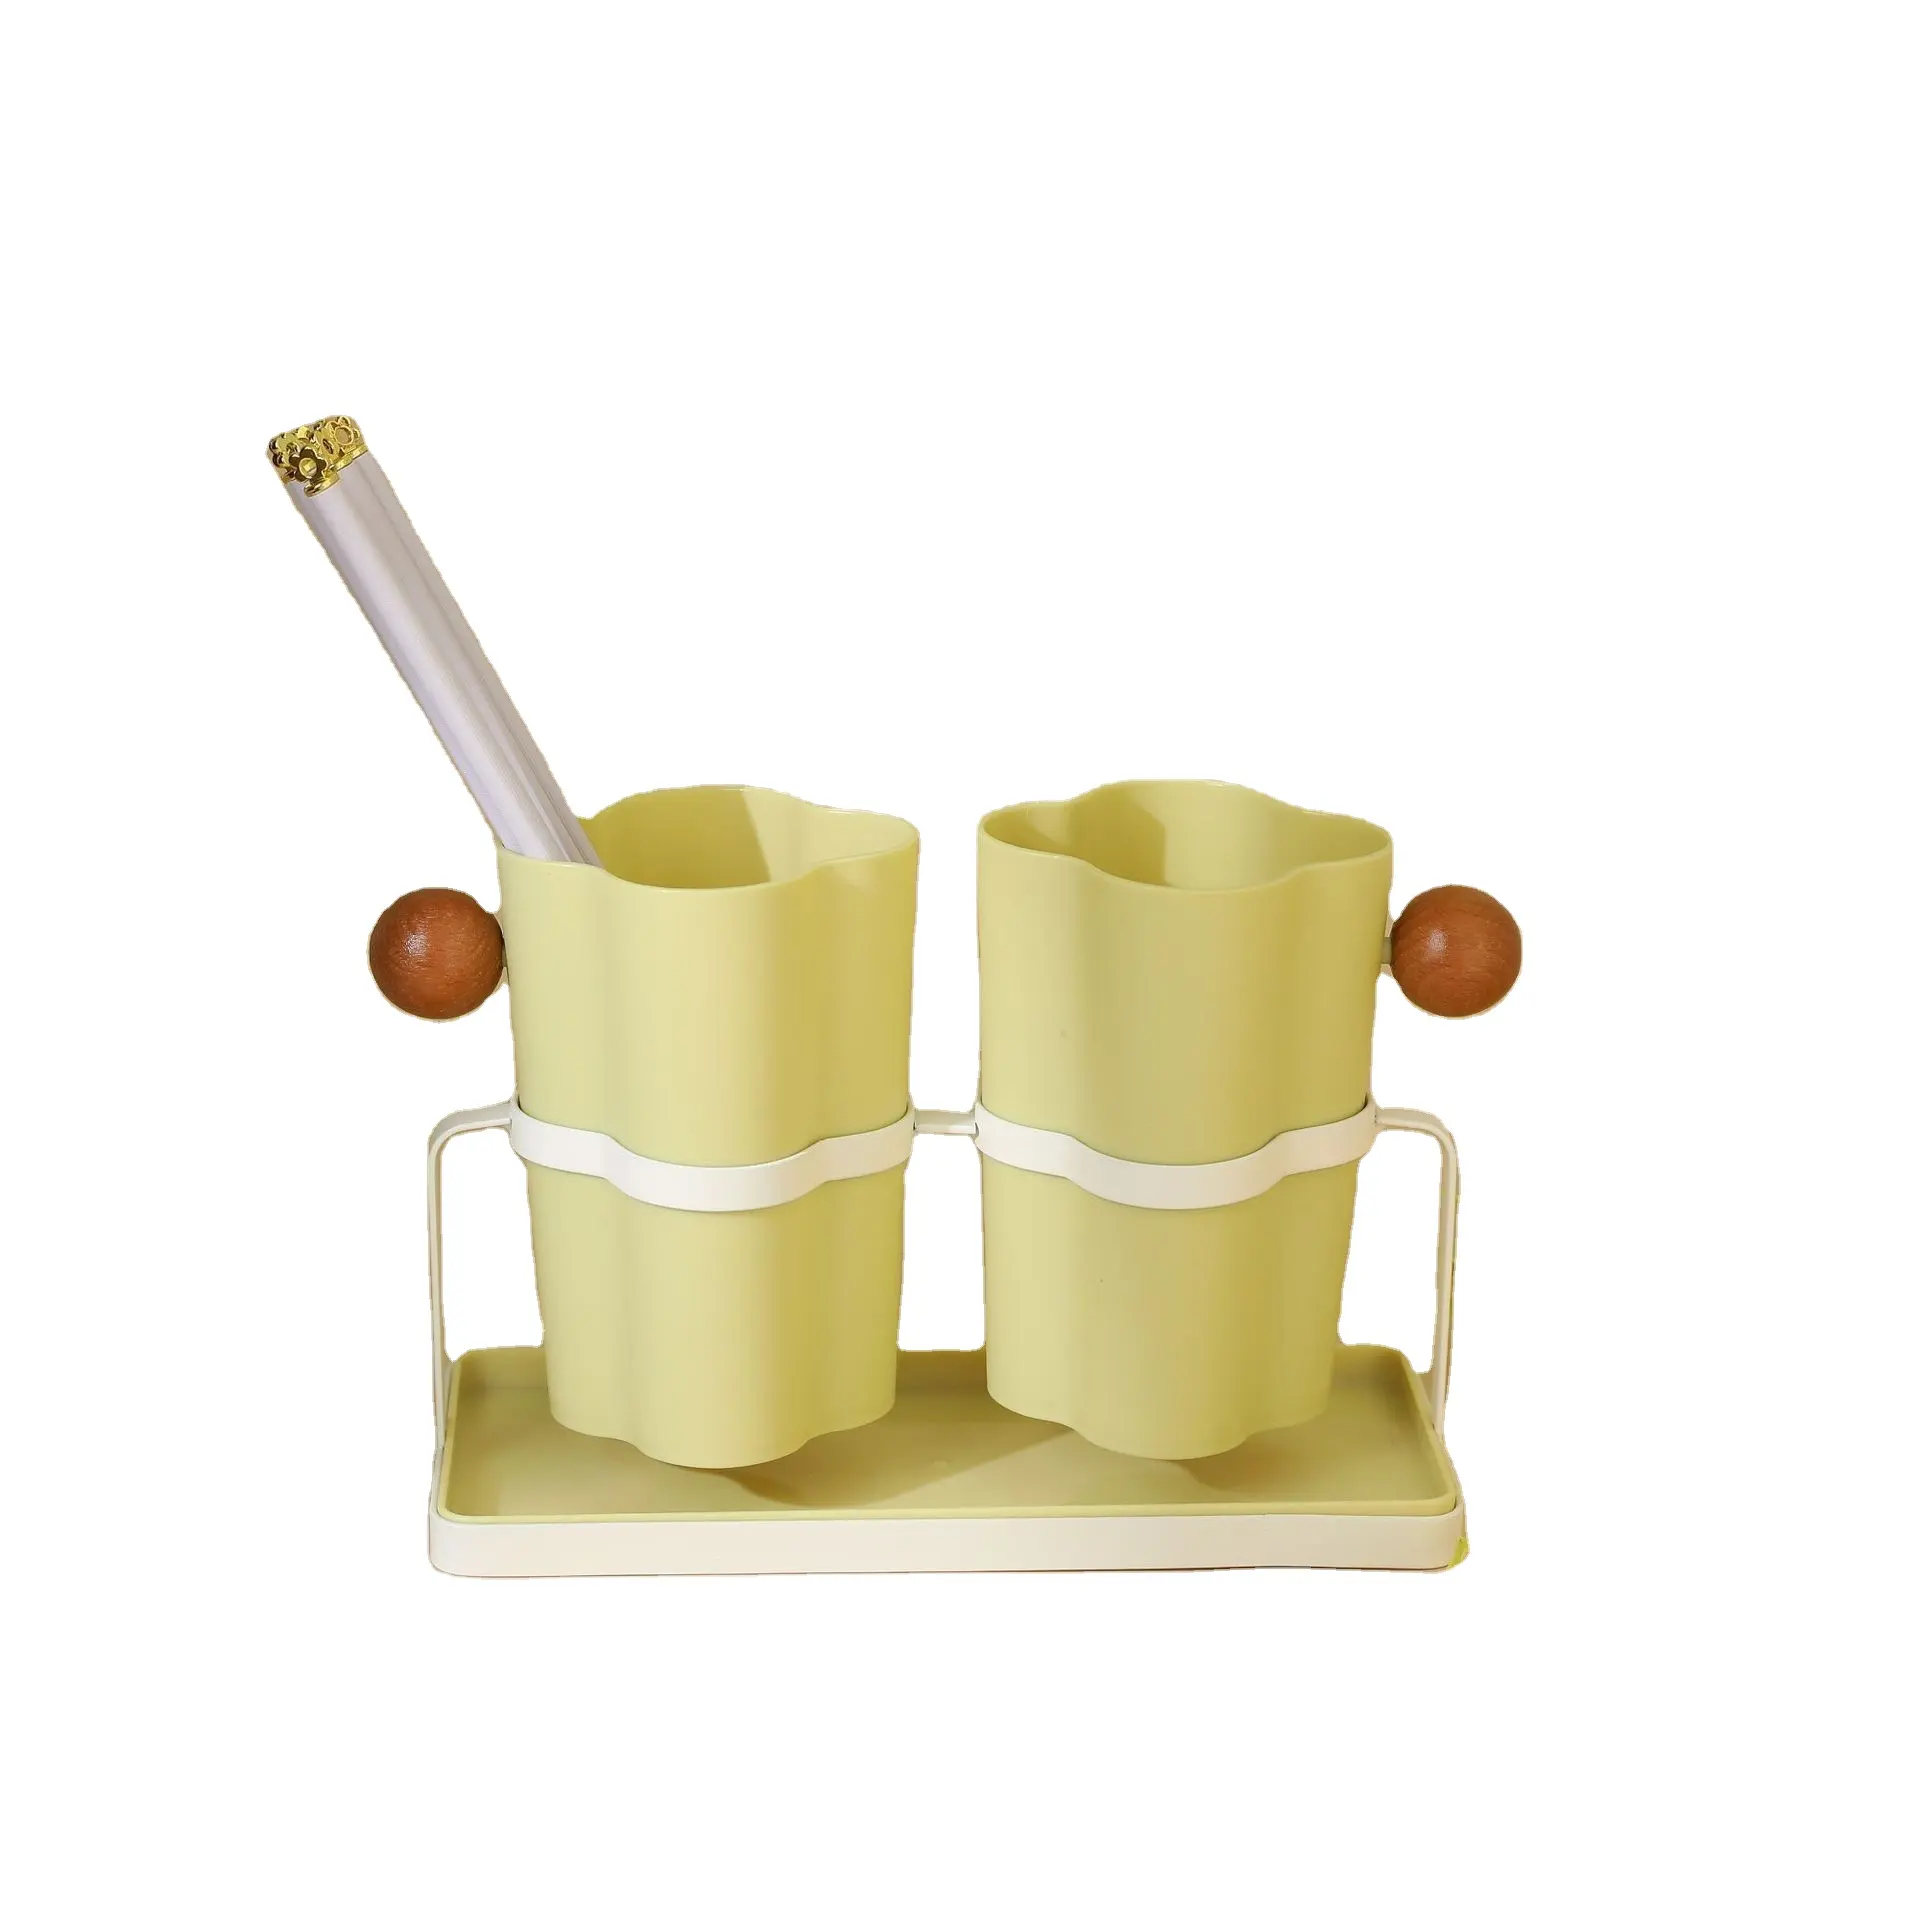 カスタムキッチン箸ナイフフォークスプーン器具プラスチック収納ホルダー箸バレルラック排水バスケット付き